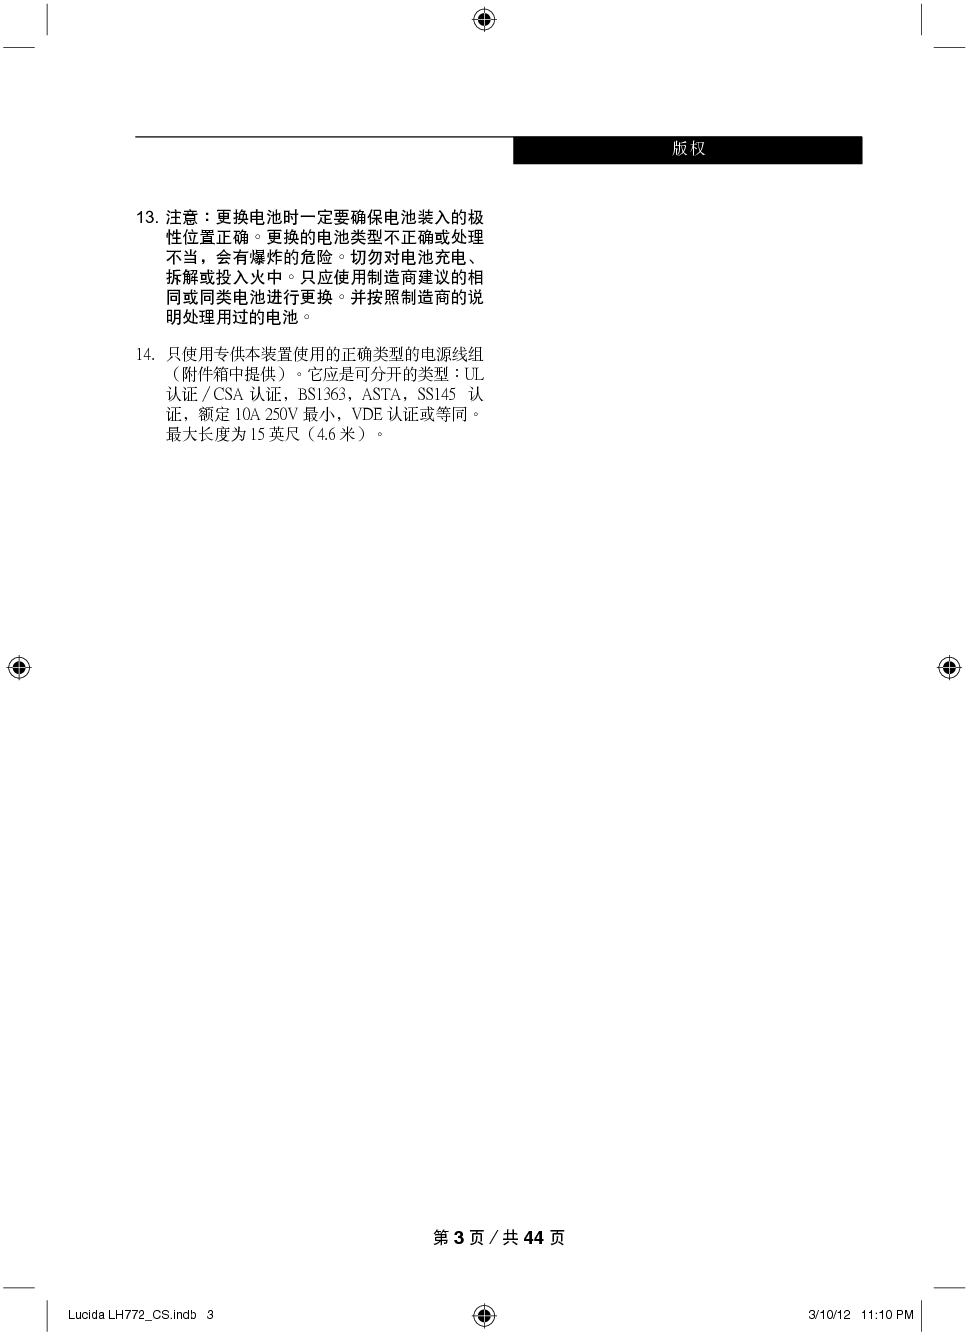 富士通 Fujitsu LifeBook LH772 Windows 8 使用说明书 第2页